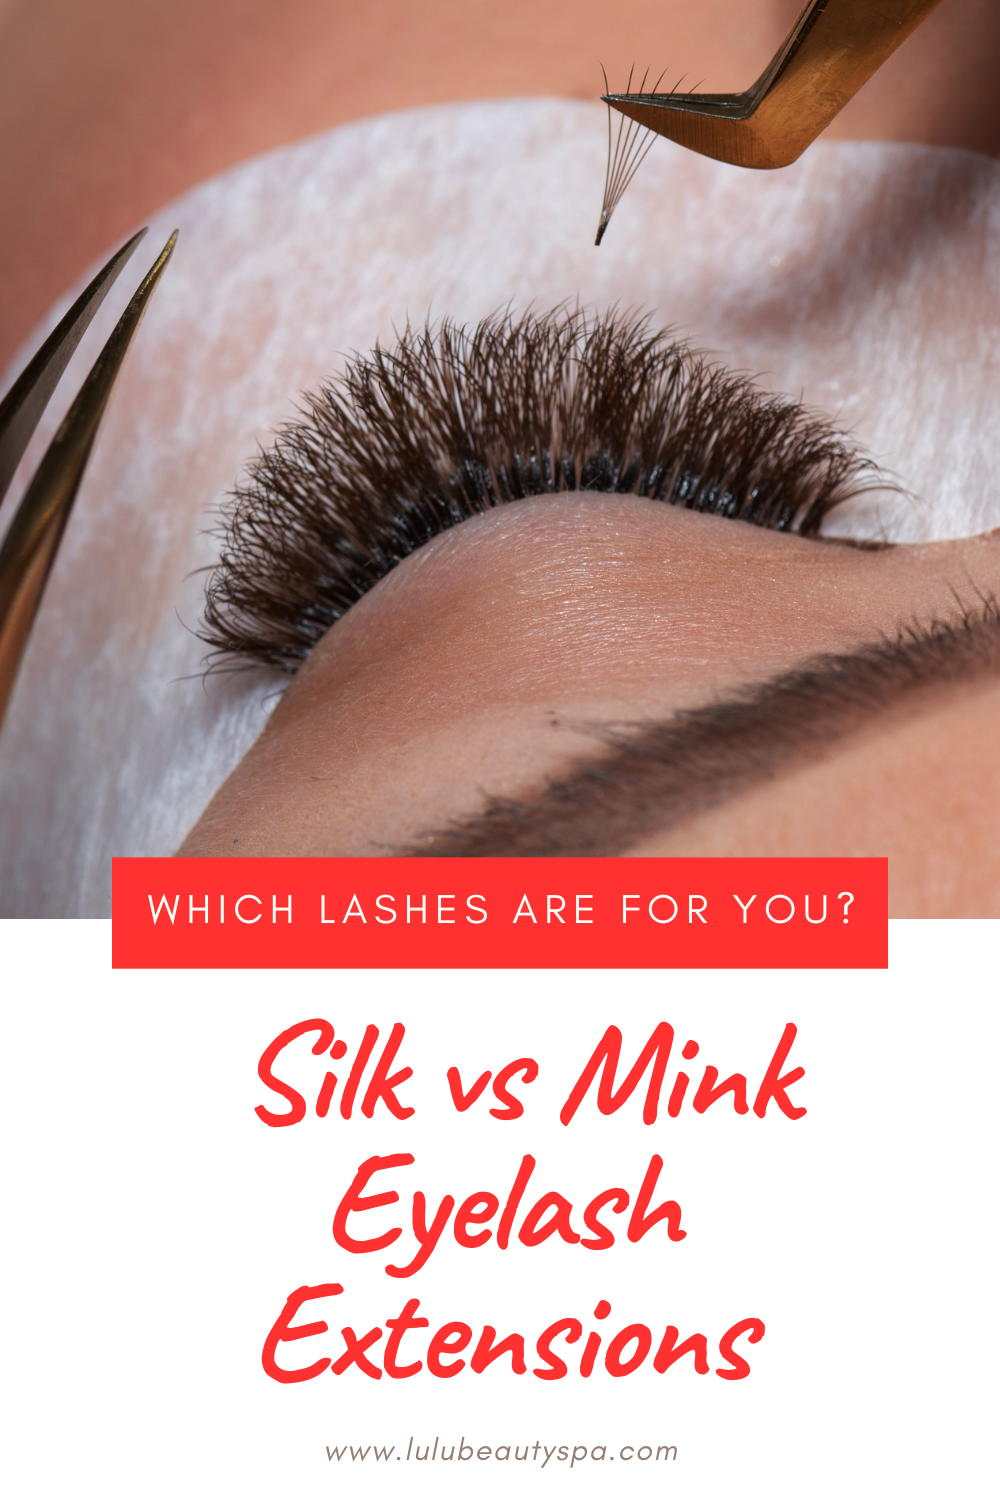 Silk vs Mink Eyelash Extensions